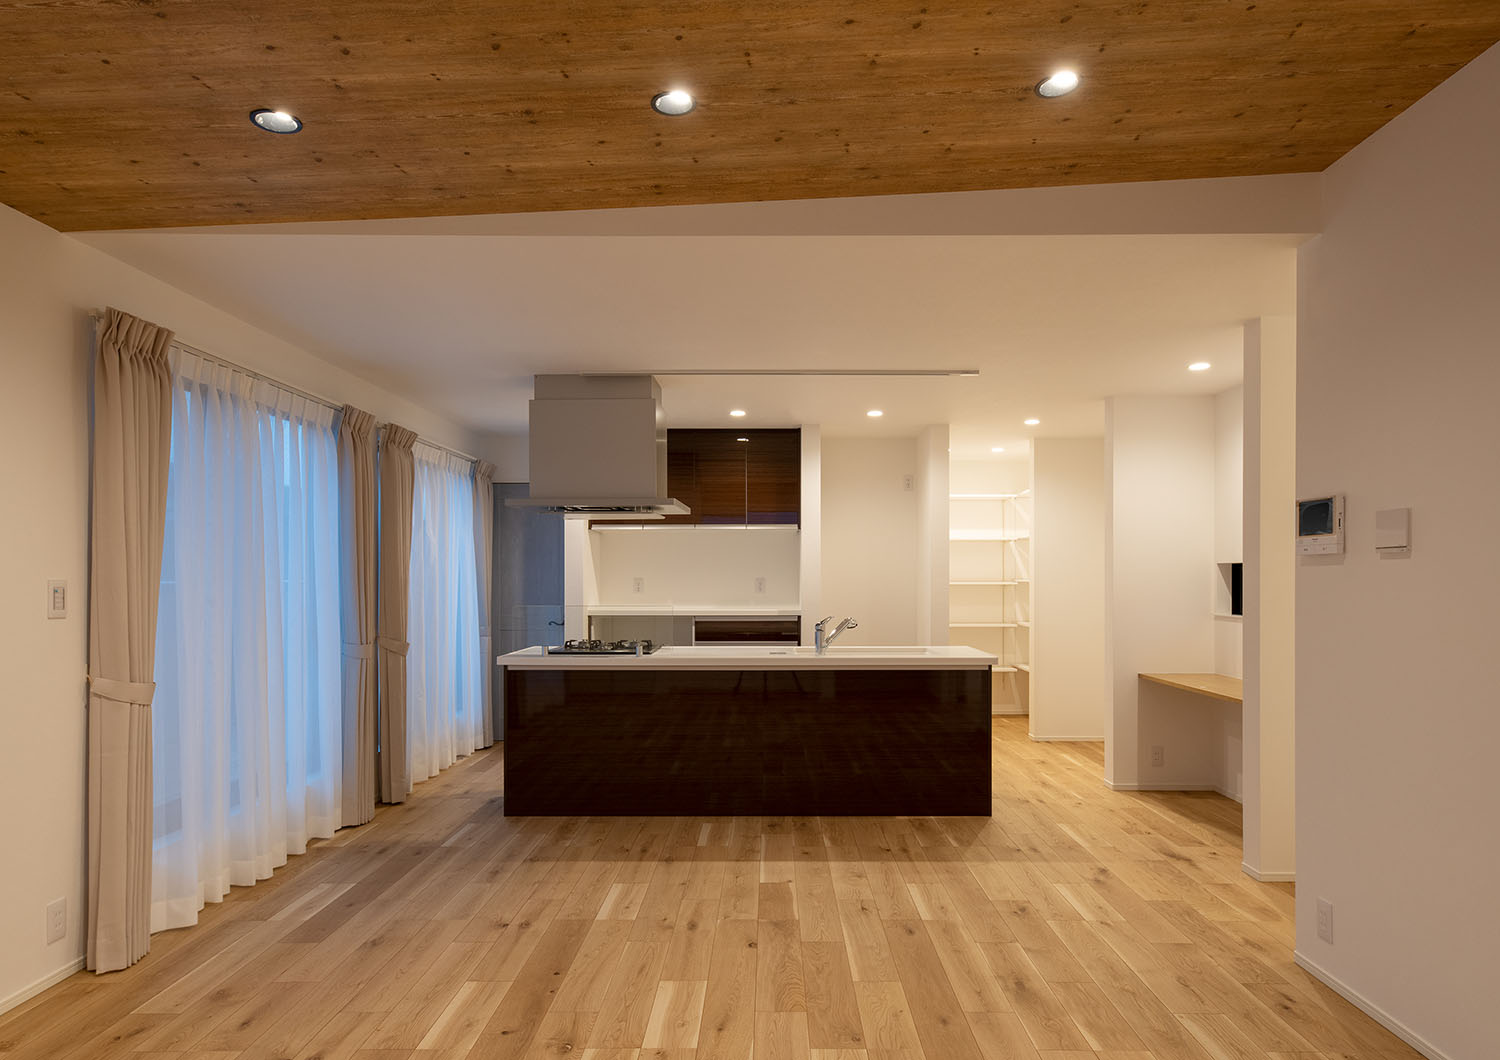 カップボードとデザインが統一されたアイランドキッチン・デザイン住宅